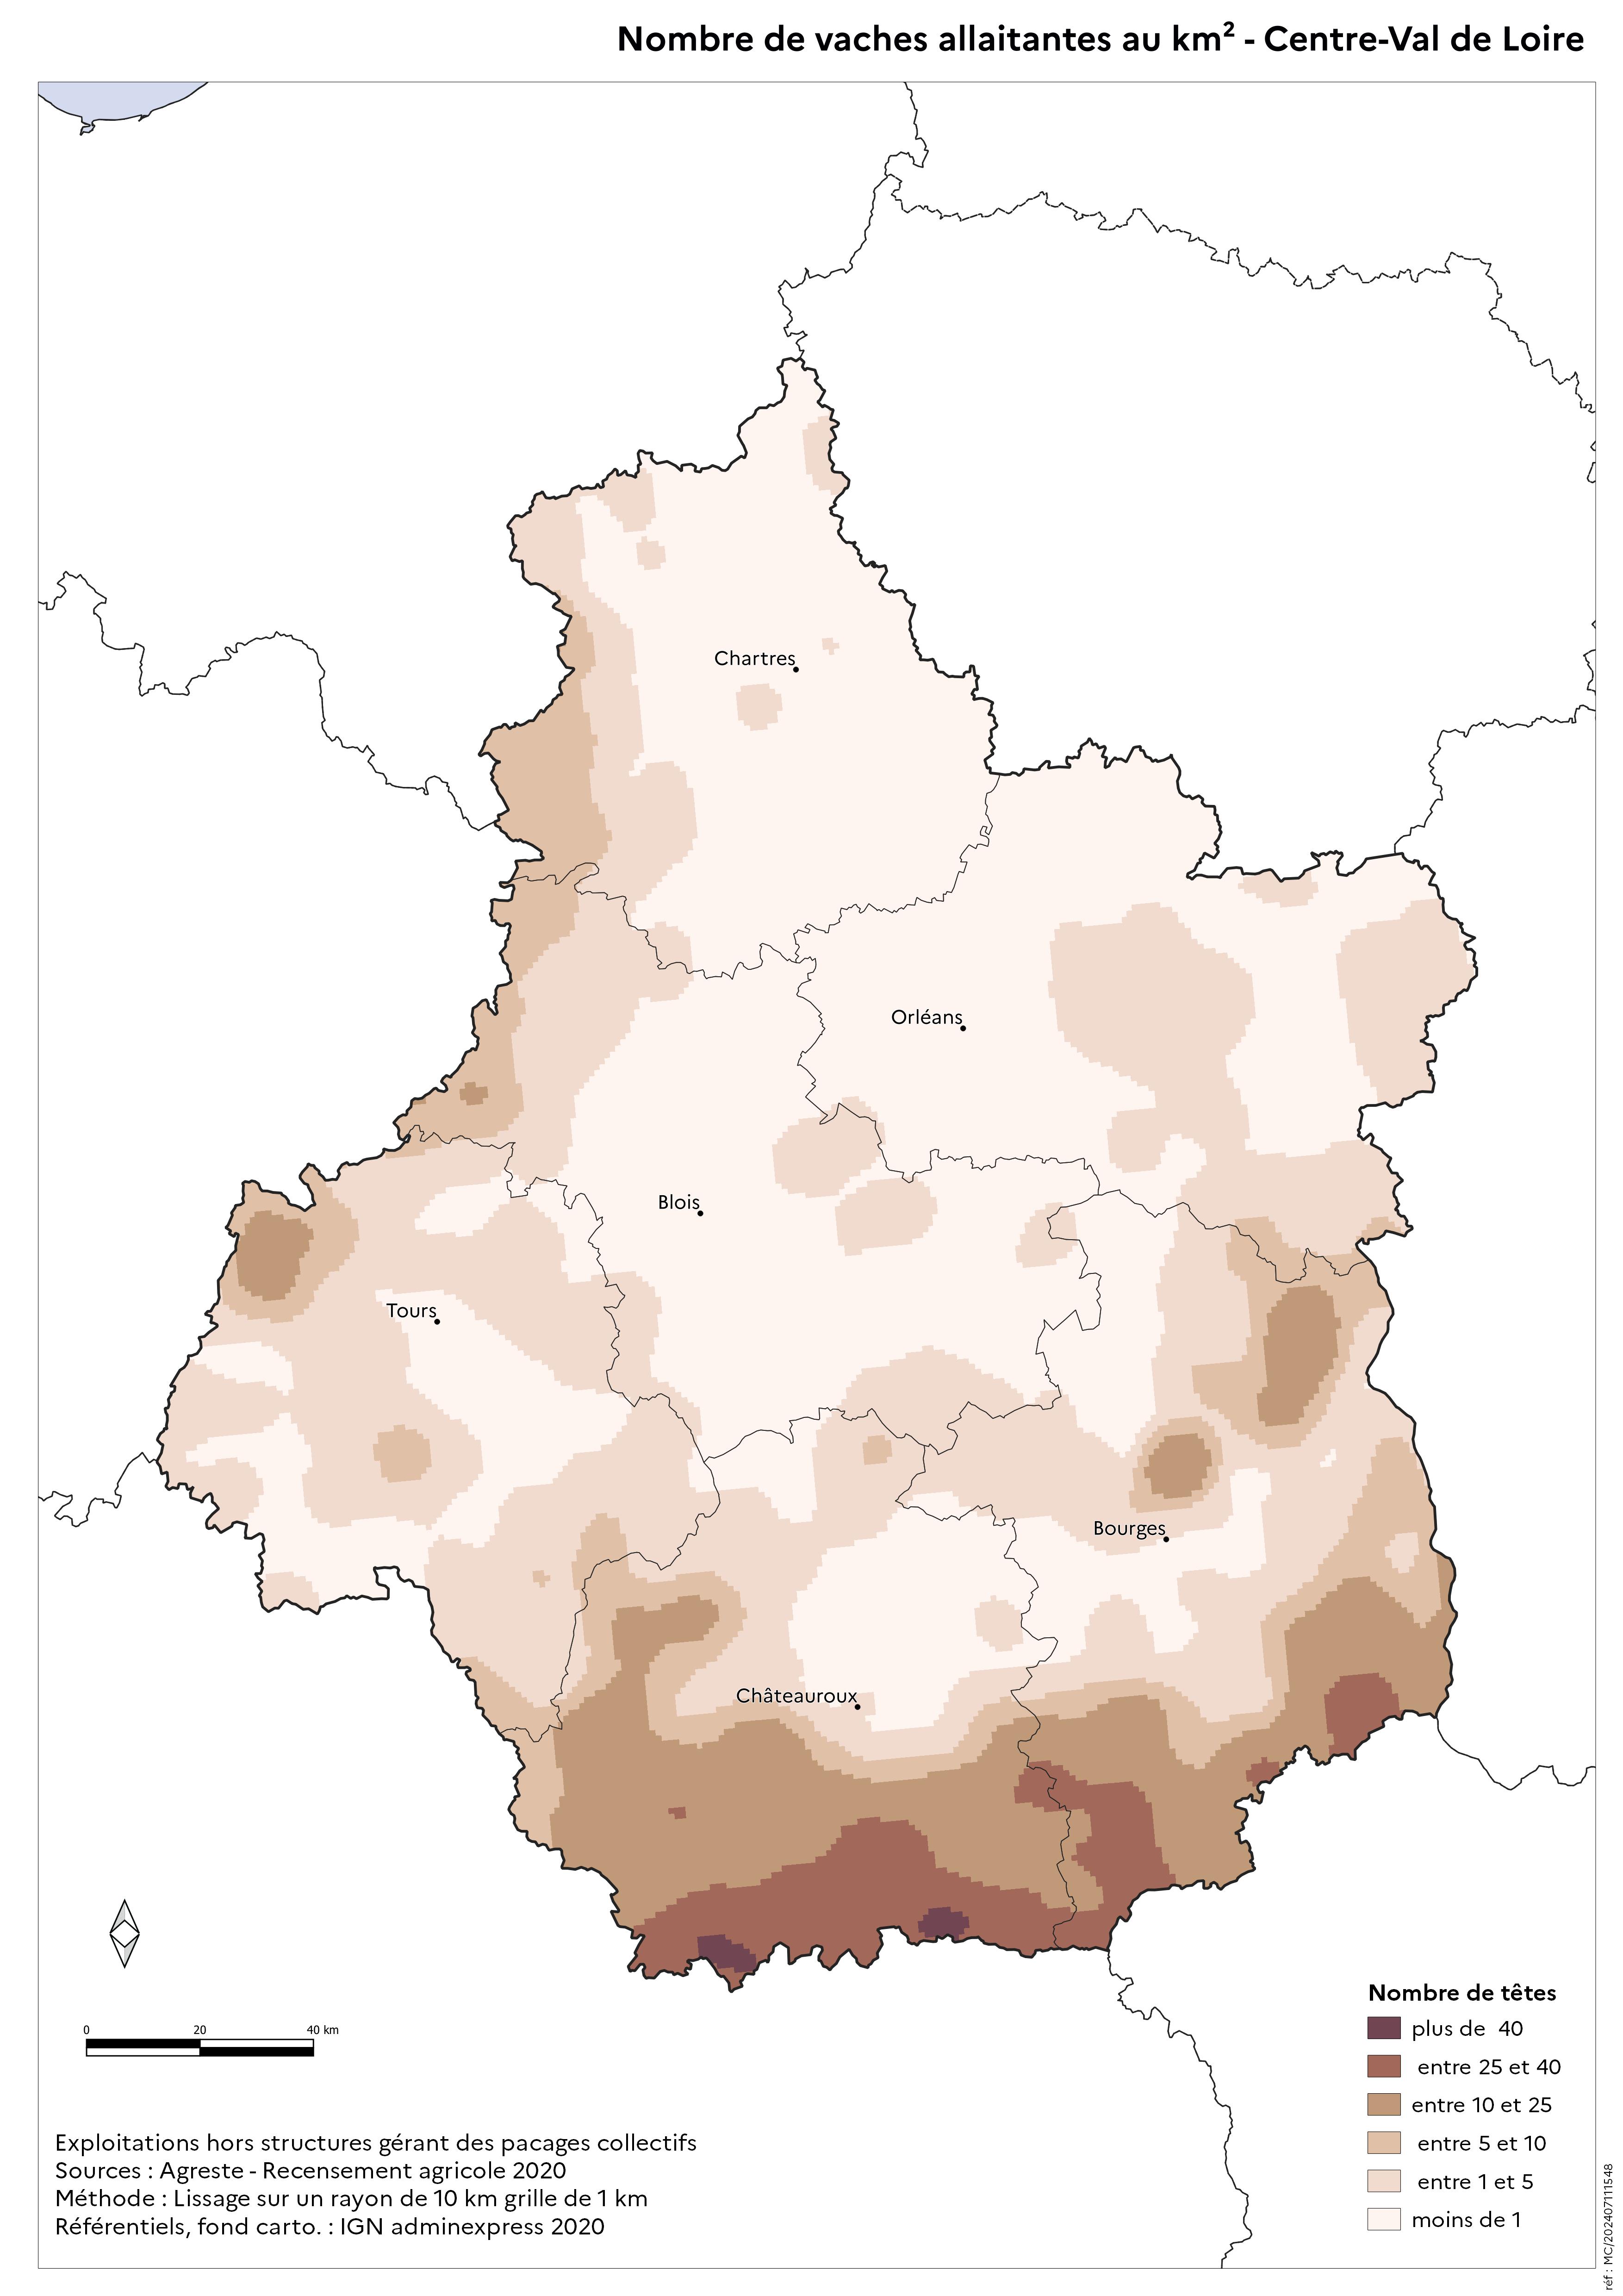 Image 8 : Nombre de vaches allaitantes au km² - Centre-Val de Loire